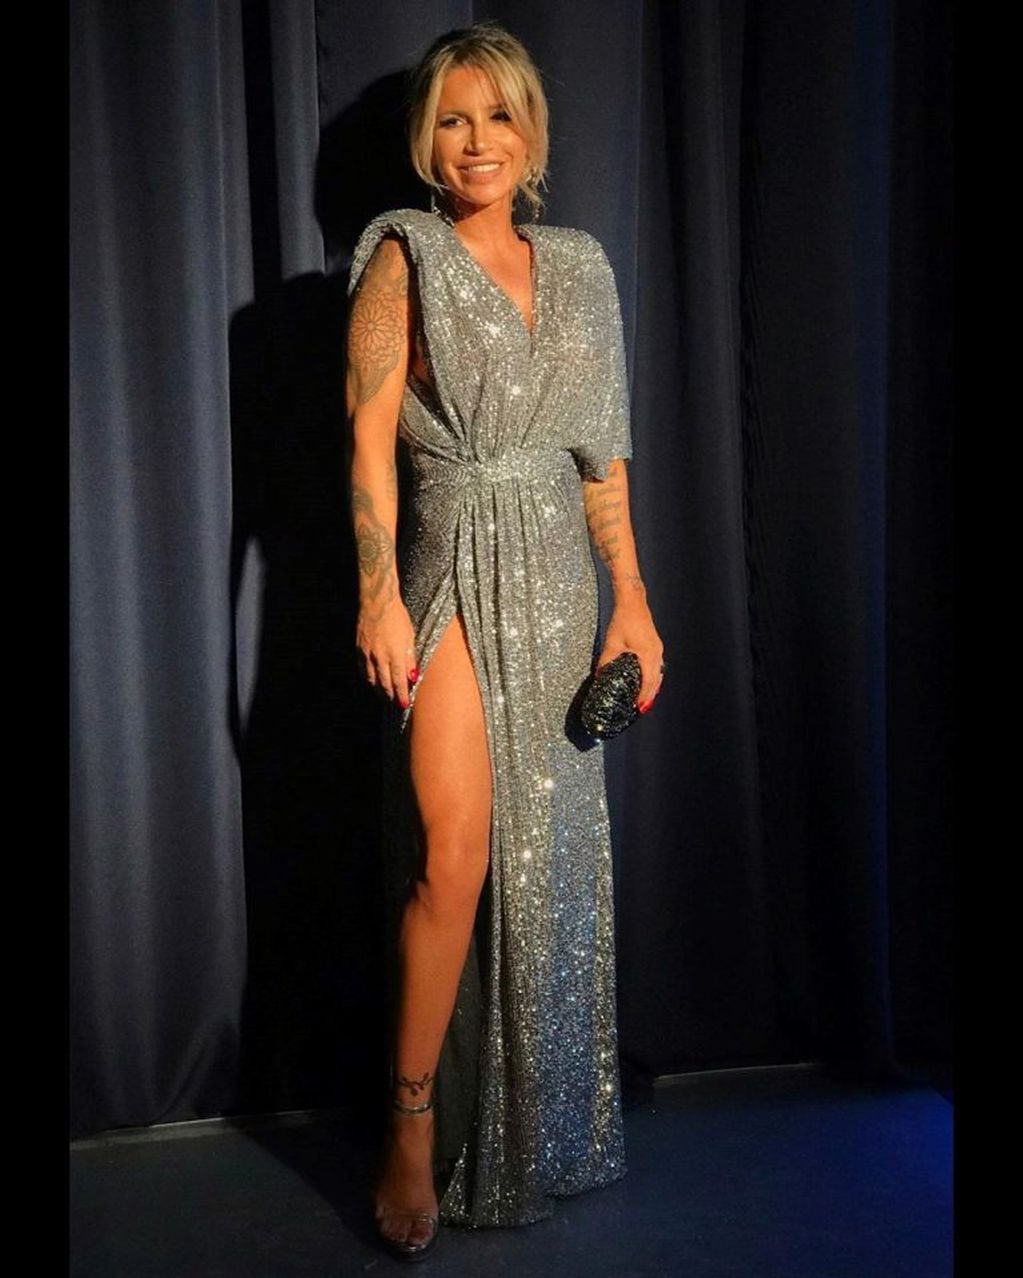 Flor Peña eligió un sensual vestido con un tajo en su pierna derecha para la gala de "Los personajes del año" de la revista Gente